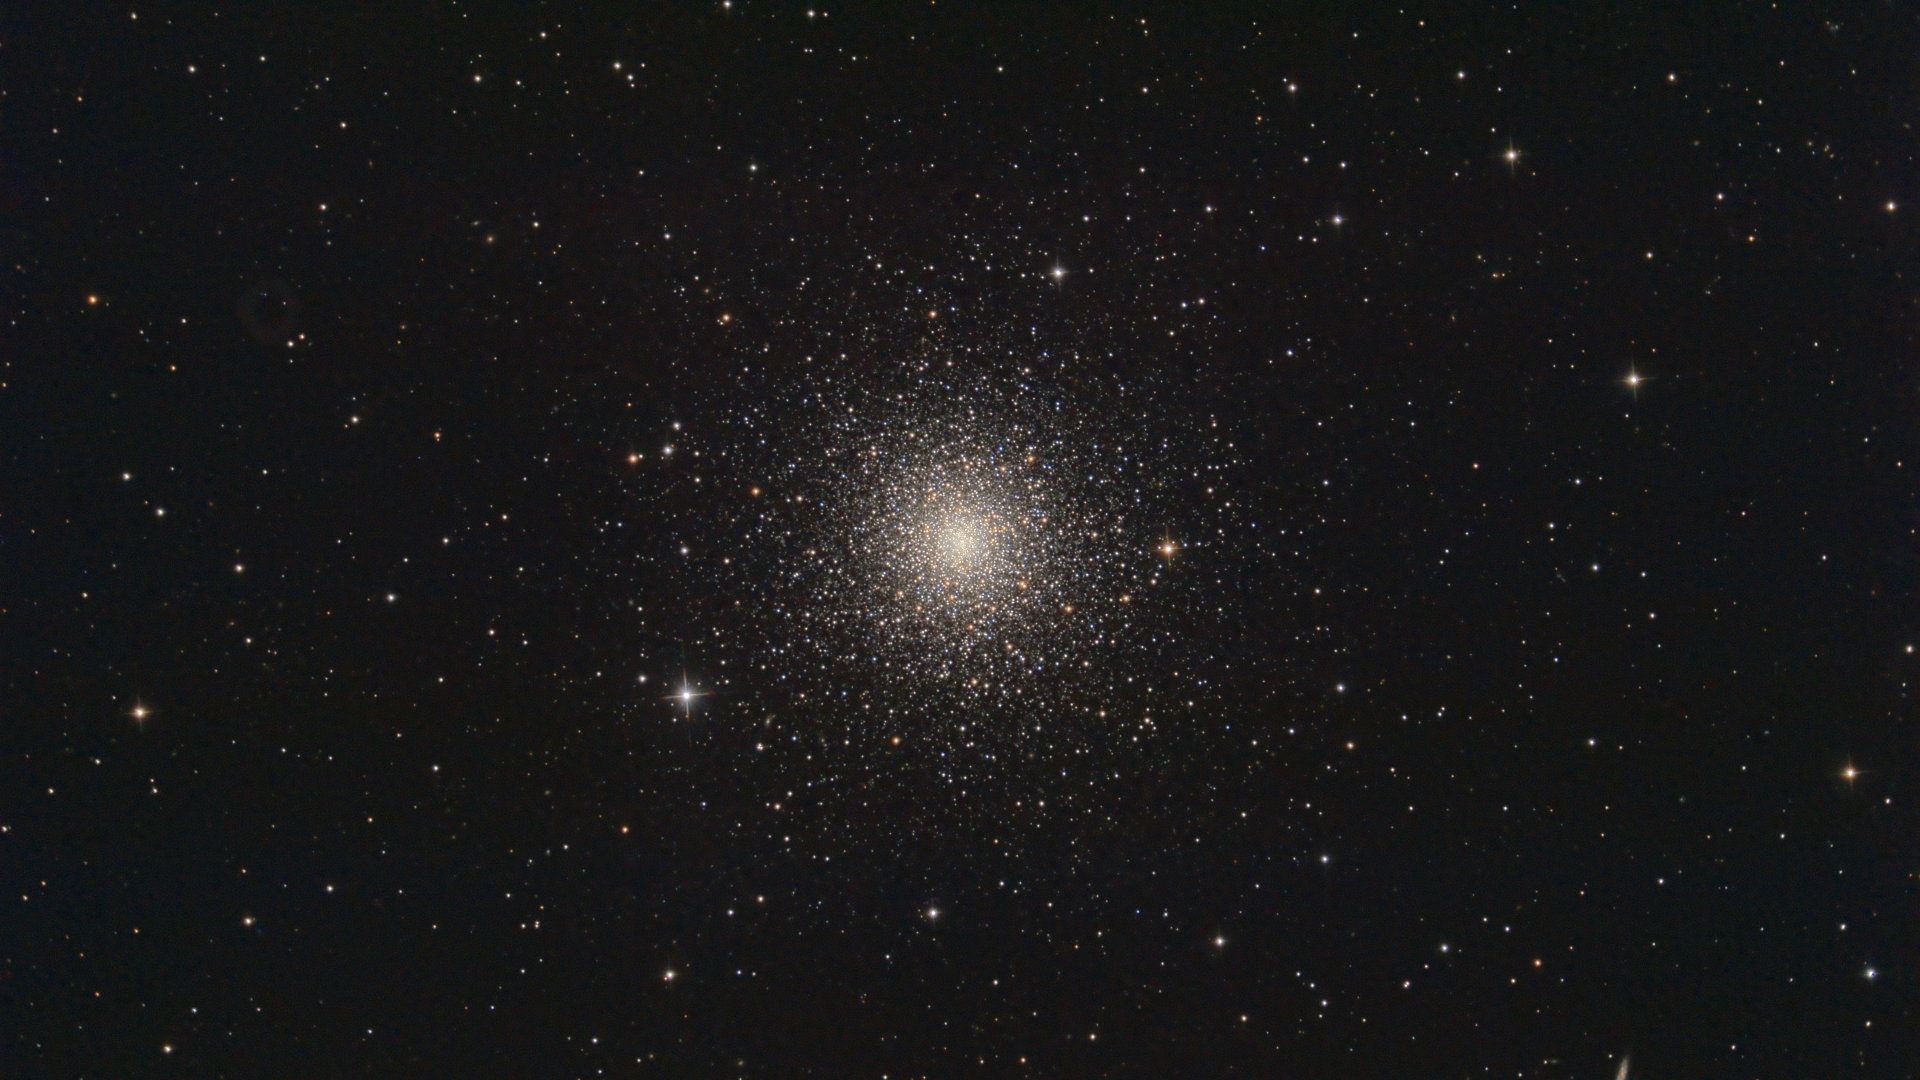 Globular Cluster Messier 3